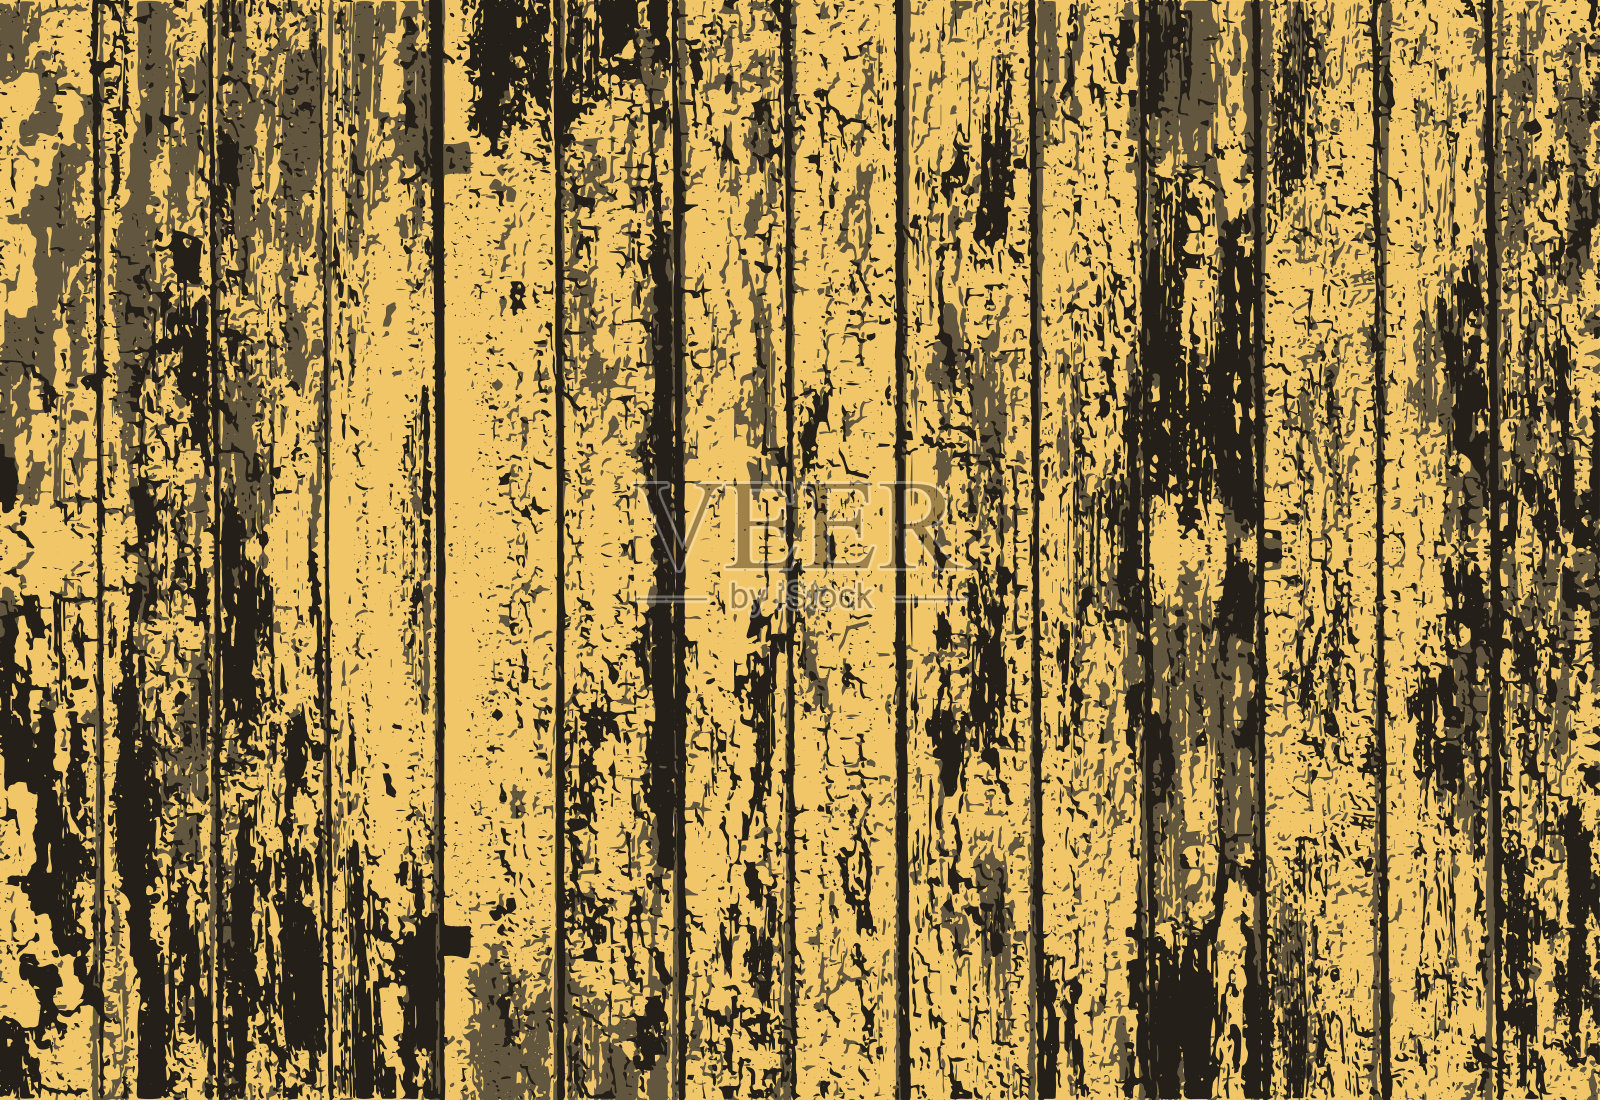 向量纹理的现实黄色老漆木栅栏。矢量图插画图片素材